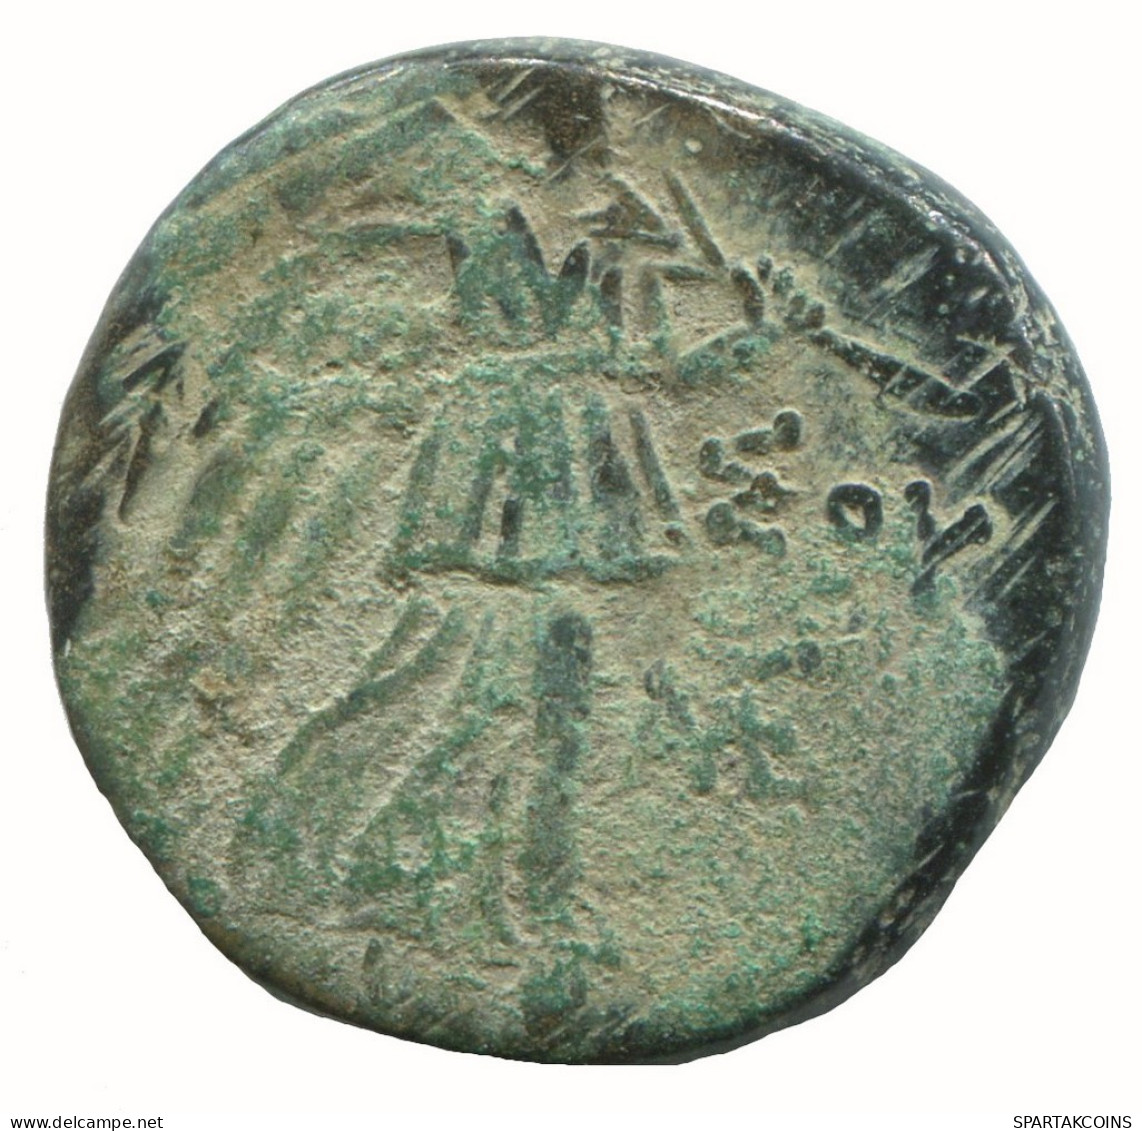 AMISOS PONTOS 100 BC Aegis With Facing Gorgon 7.1g/20mm GRIECHISCHE Münze #NNN1527.30.D.A - Griechische Münzen